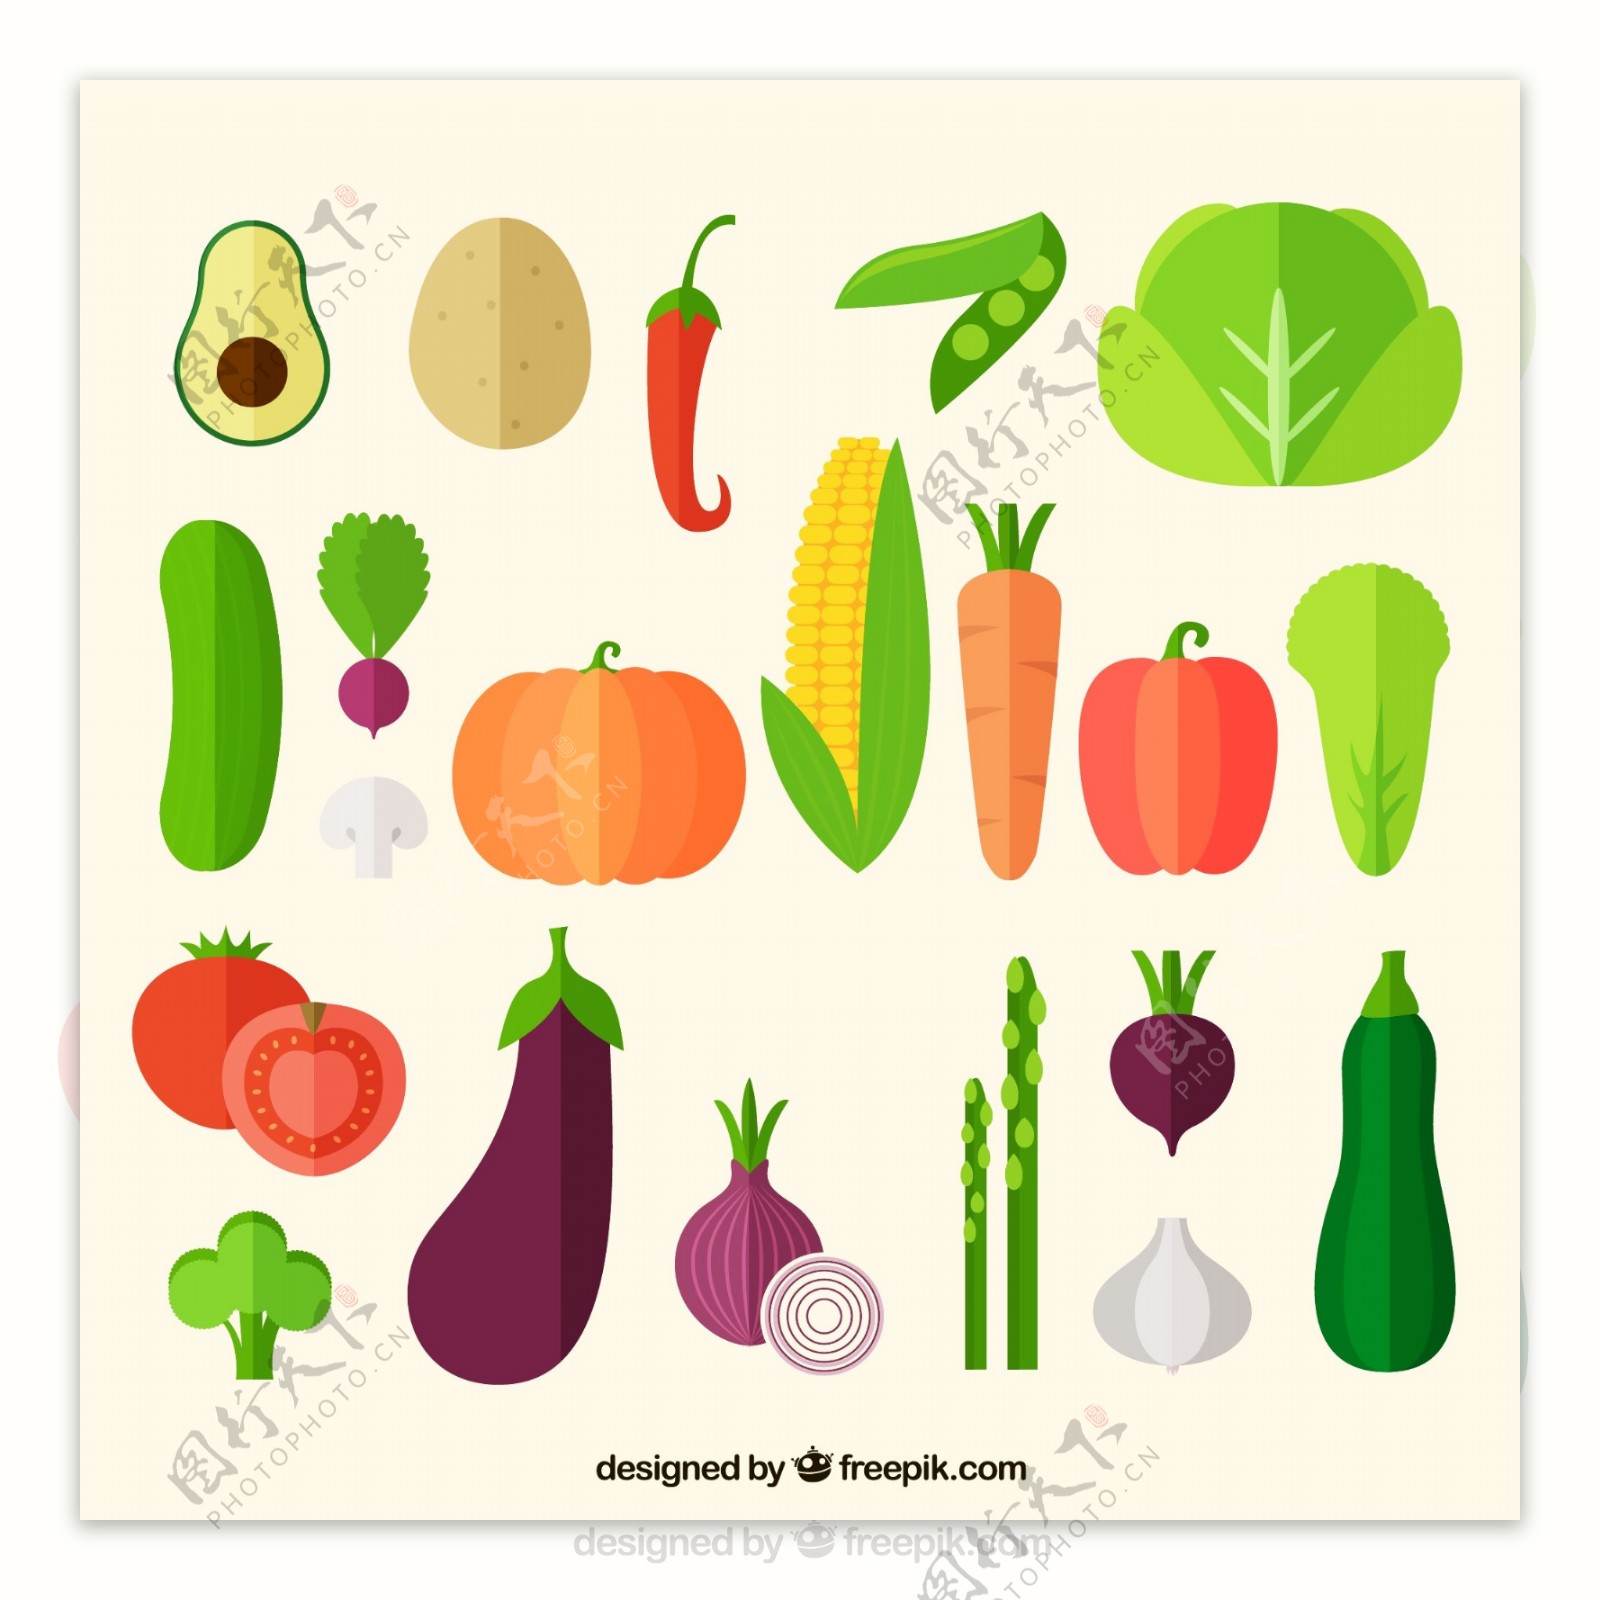 21款扁平化蔬菜矢量素材图片